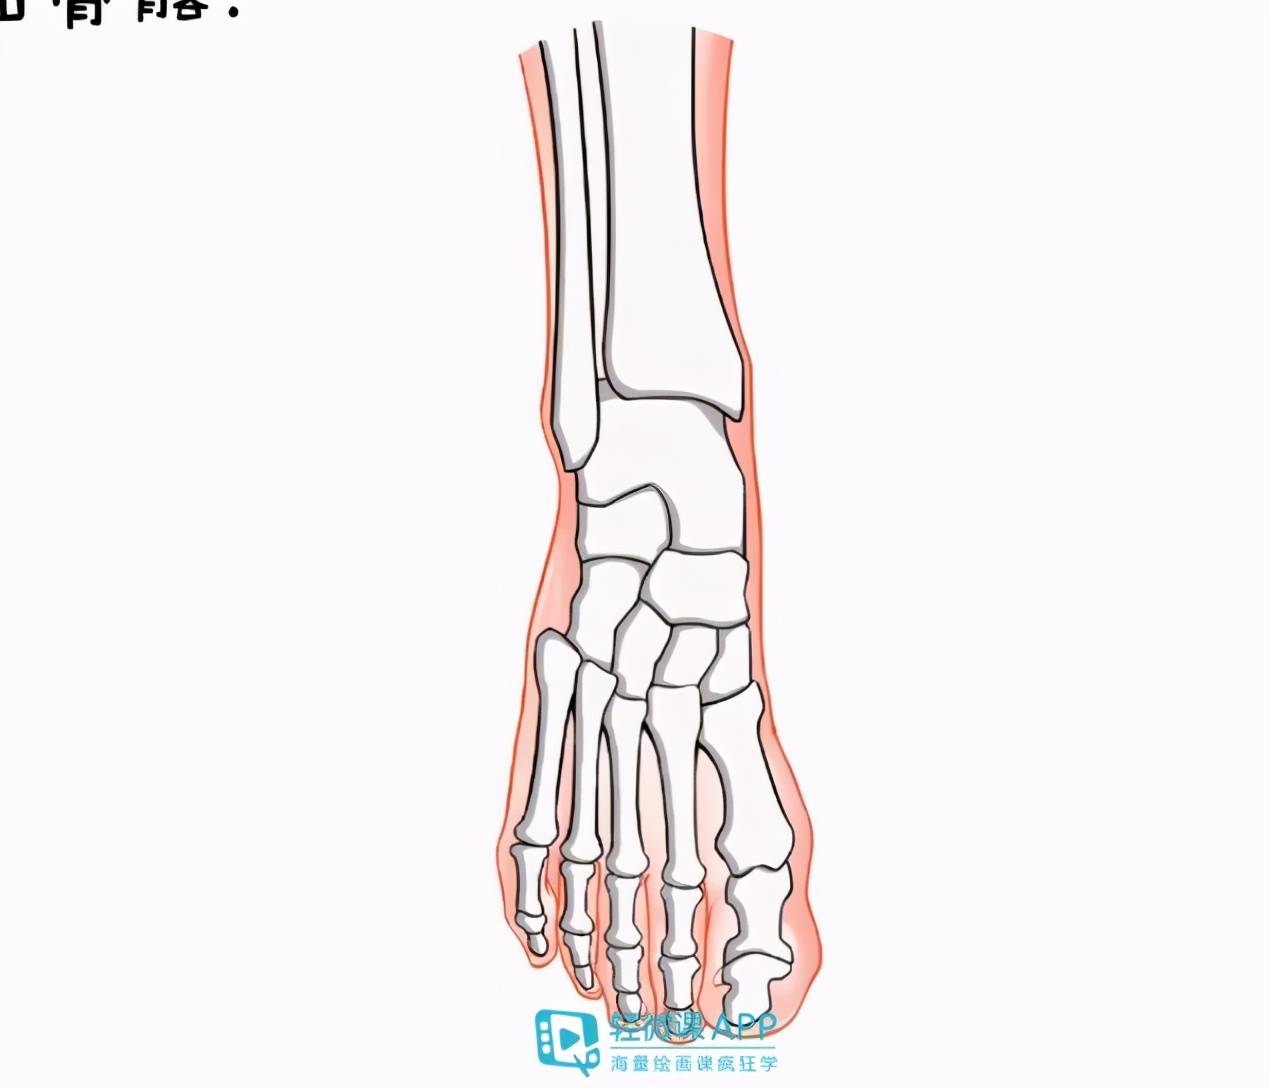 大拇指的关节外侧,小拇指的关节外侧和前脚掌的外侧